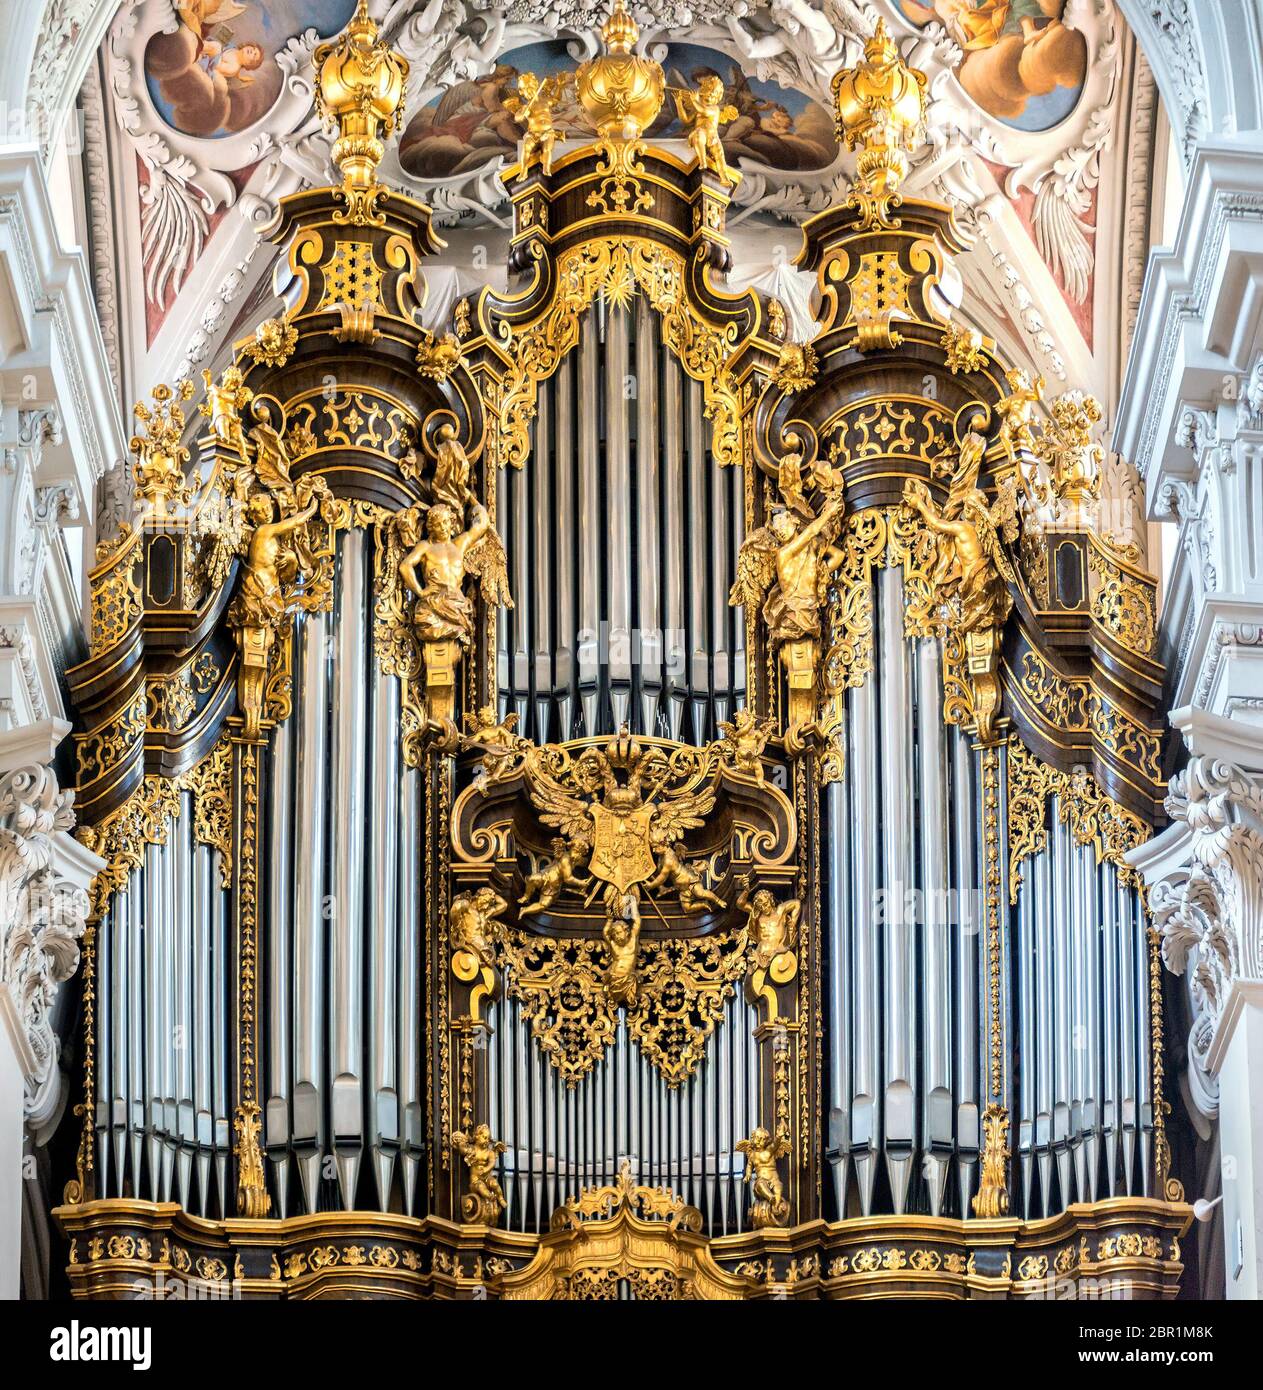 Órgano en la Catedral de San Esteban, Passau. Es el órgano de la catedral más  grande del mundo. El órgano tiene actualmente 17,774 tubos y 233 registros  Fotografía de stock - Alamy